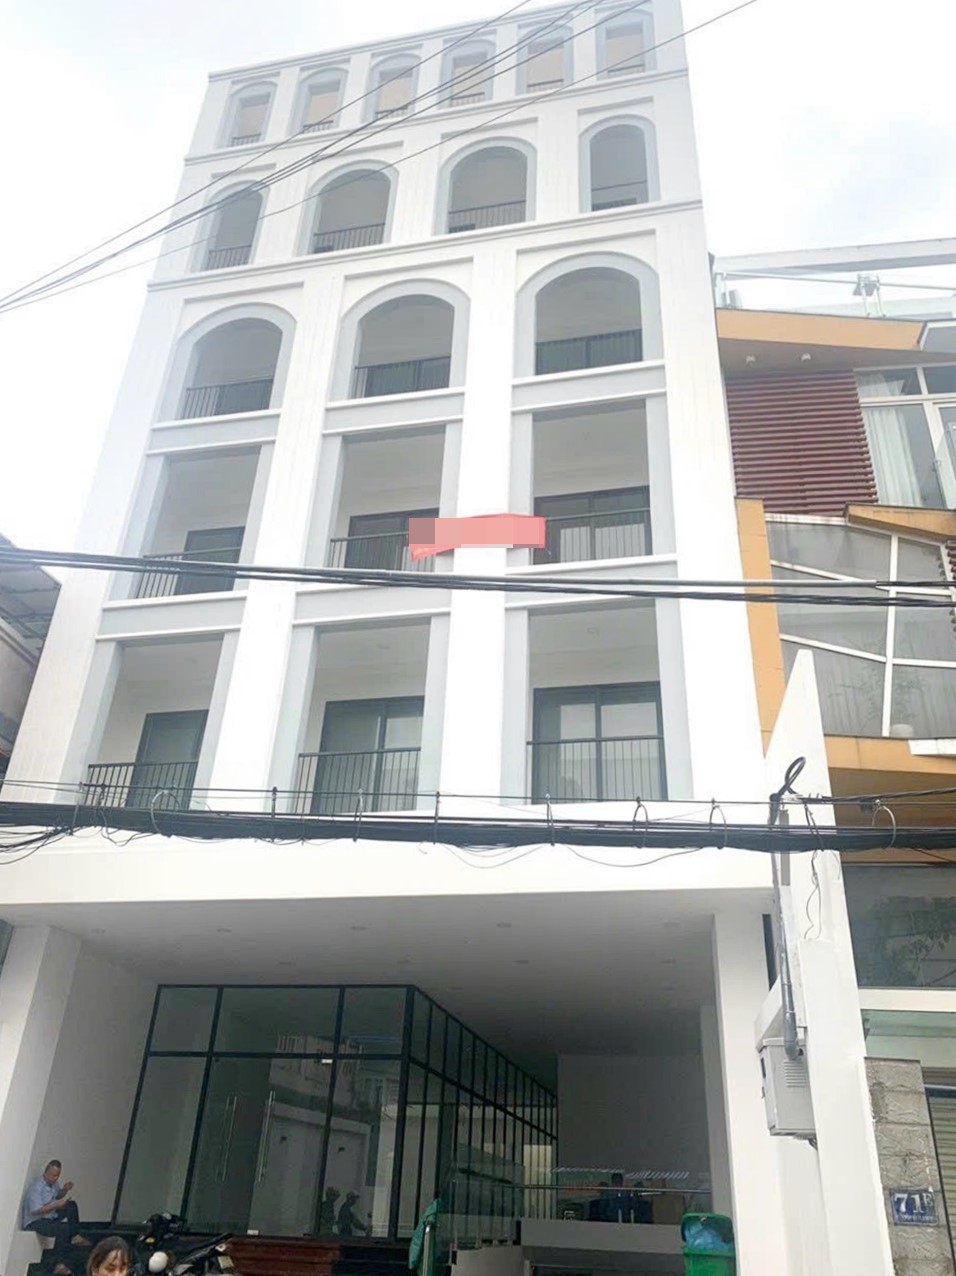 Cao ốc văn phòng cho thuê tòa nhà GoldStar 71D Nguyễn Thượng Hiền, Quận Bình Thạnh, TPHCM - vlook.vn - 0909170387